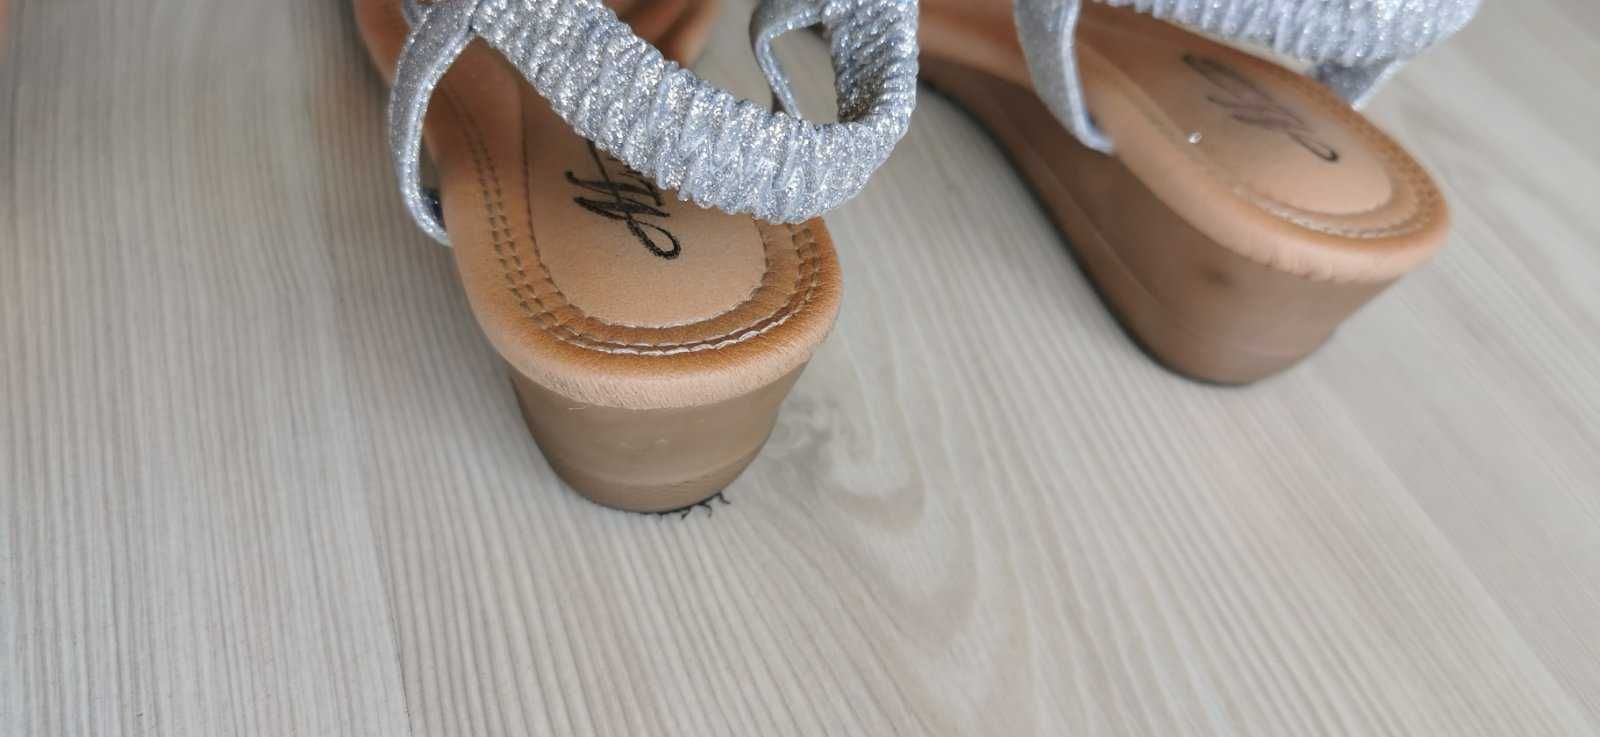 Sandałki na koturnie srebrno-złote rozmiar 37 (długościowo 38)